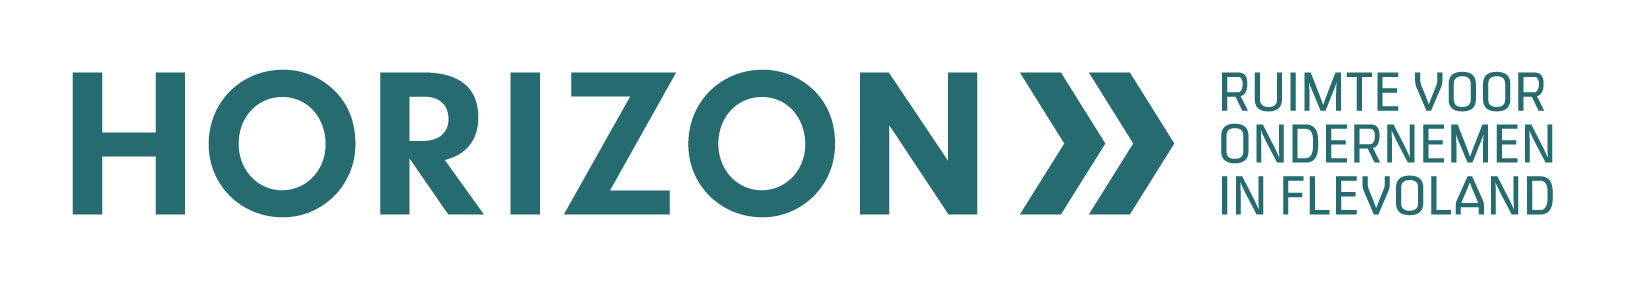 Logo Horizon, ruimte voor ondernemen in Flevoland